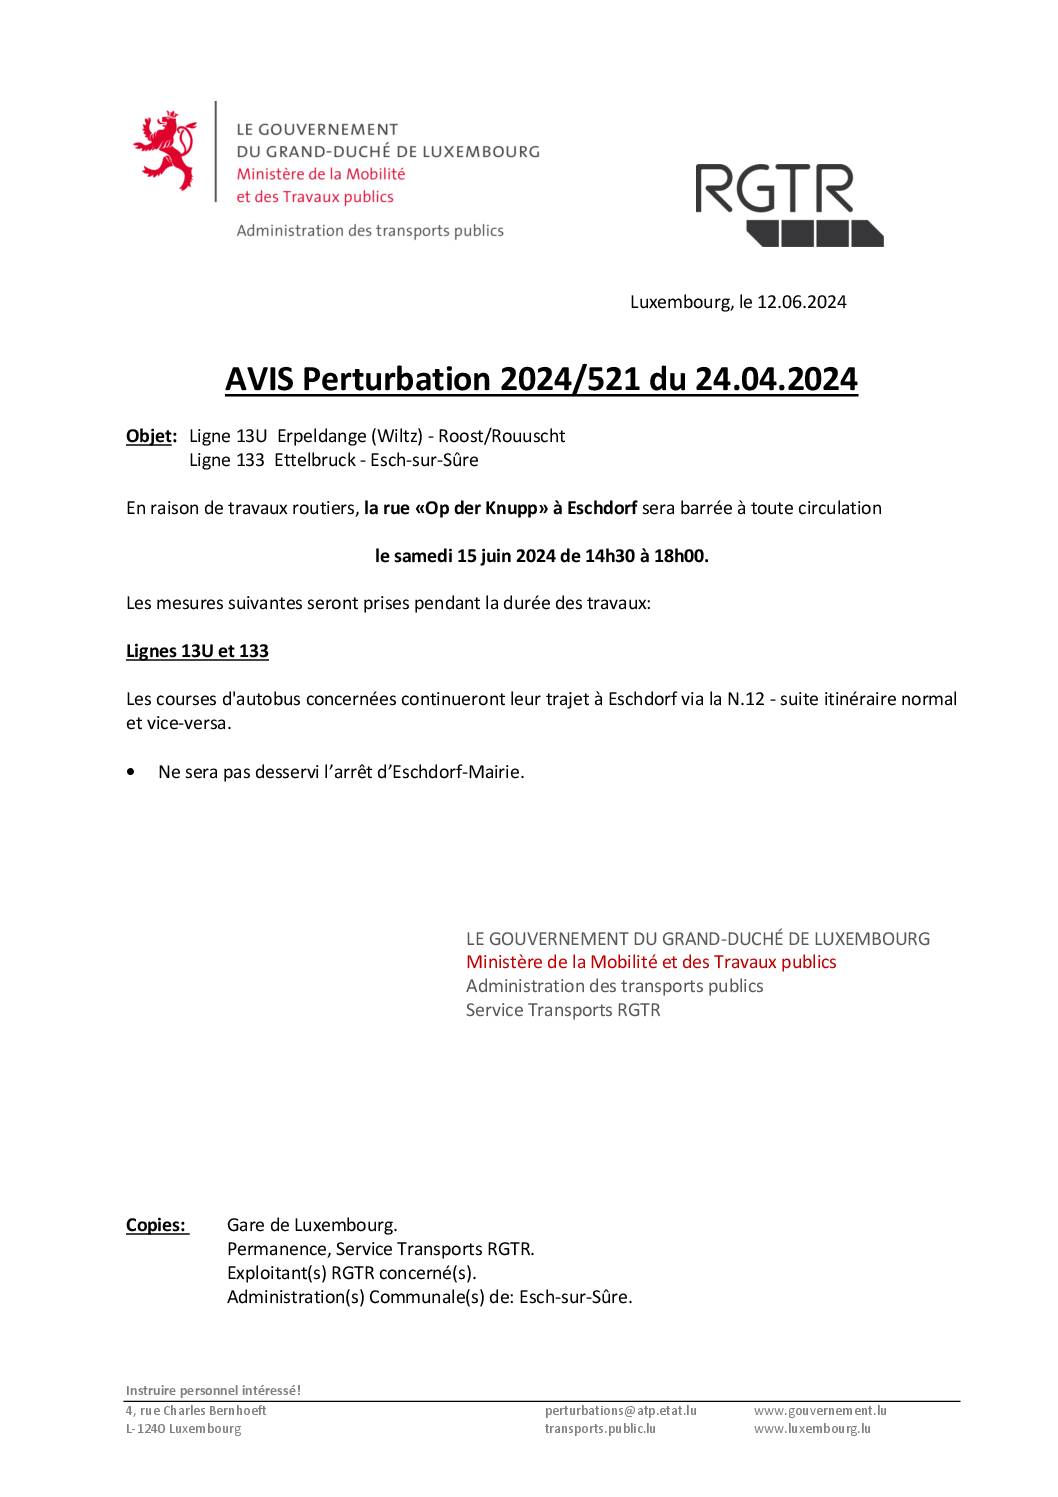 Perturbation 2024/521 – Lignes 13U & 133 (en date du 15.06.2024)